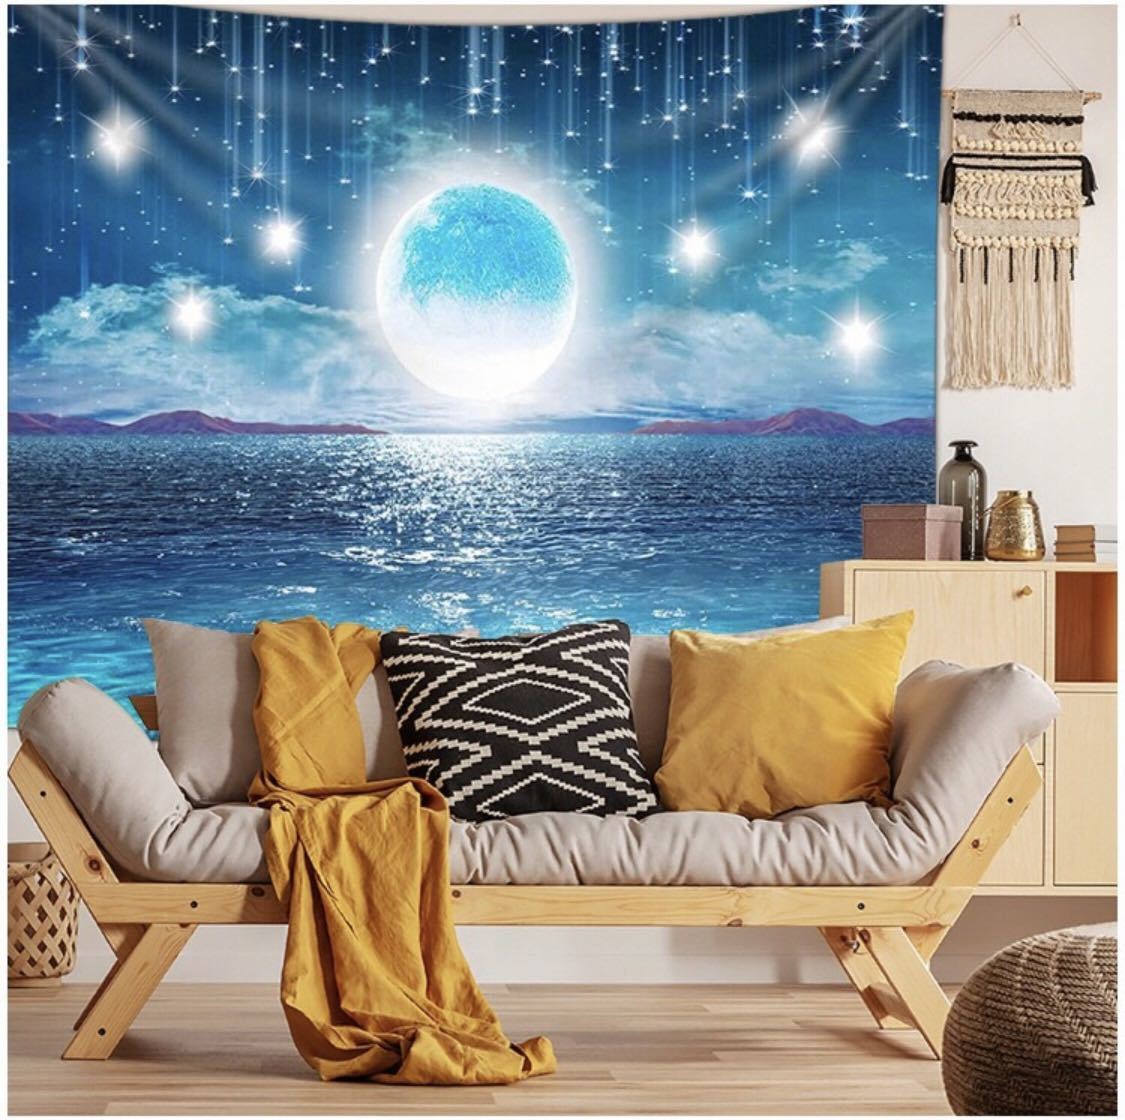 Гобелен настенный декор для интерьера Instagram плакат морская луна звезды ночное небо ночной вид, Изделия ручной работы, интерьер, разные товары, панель, Гобелен